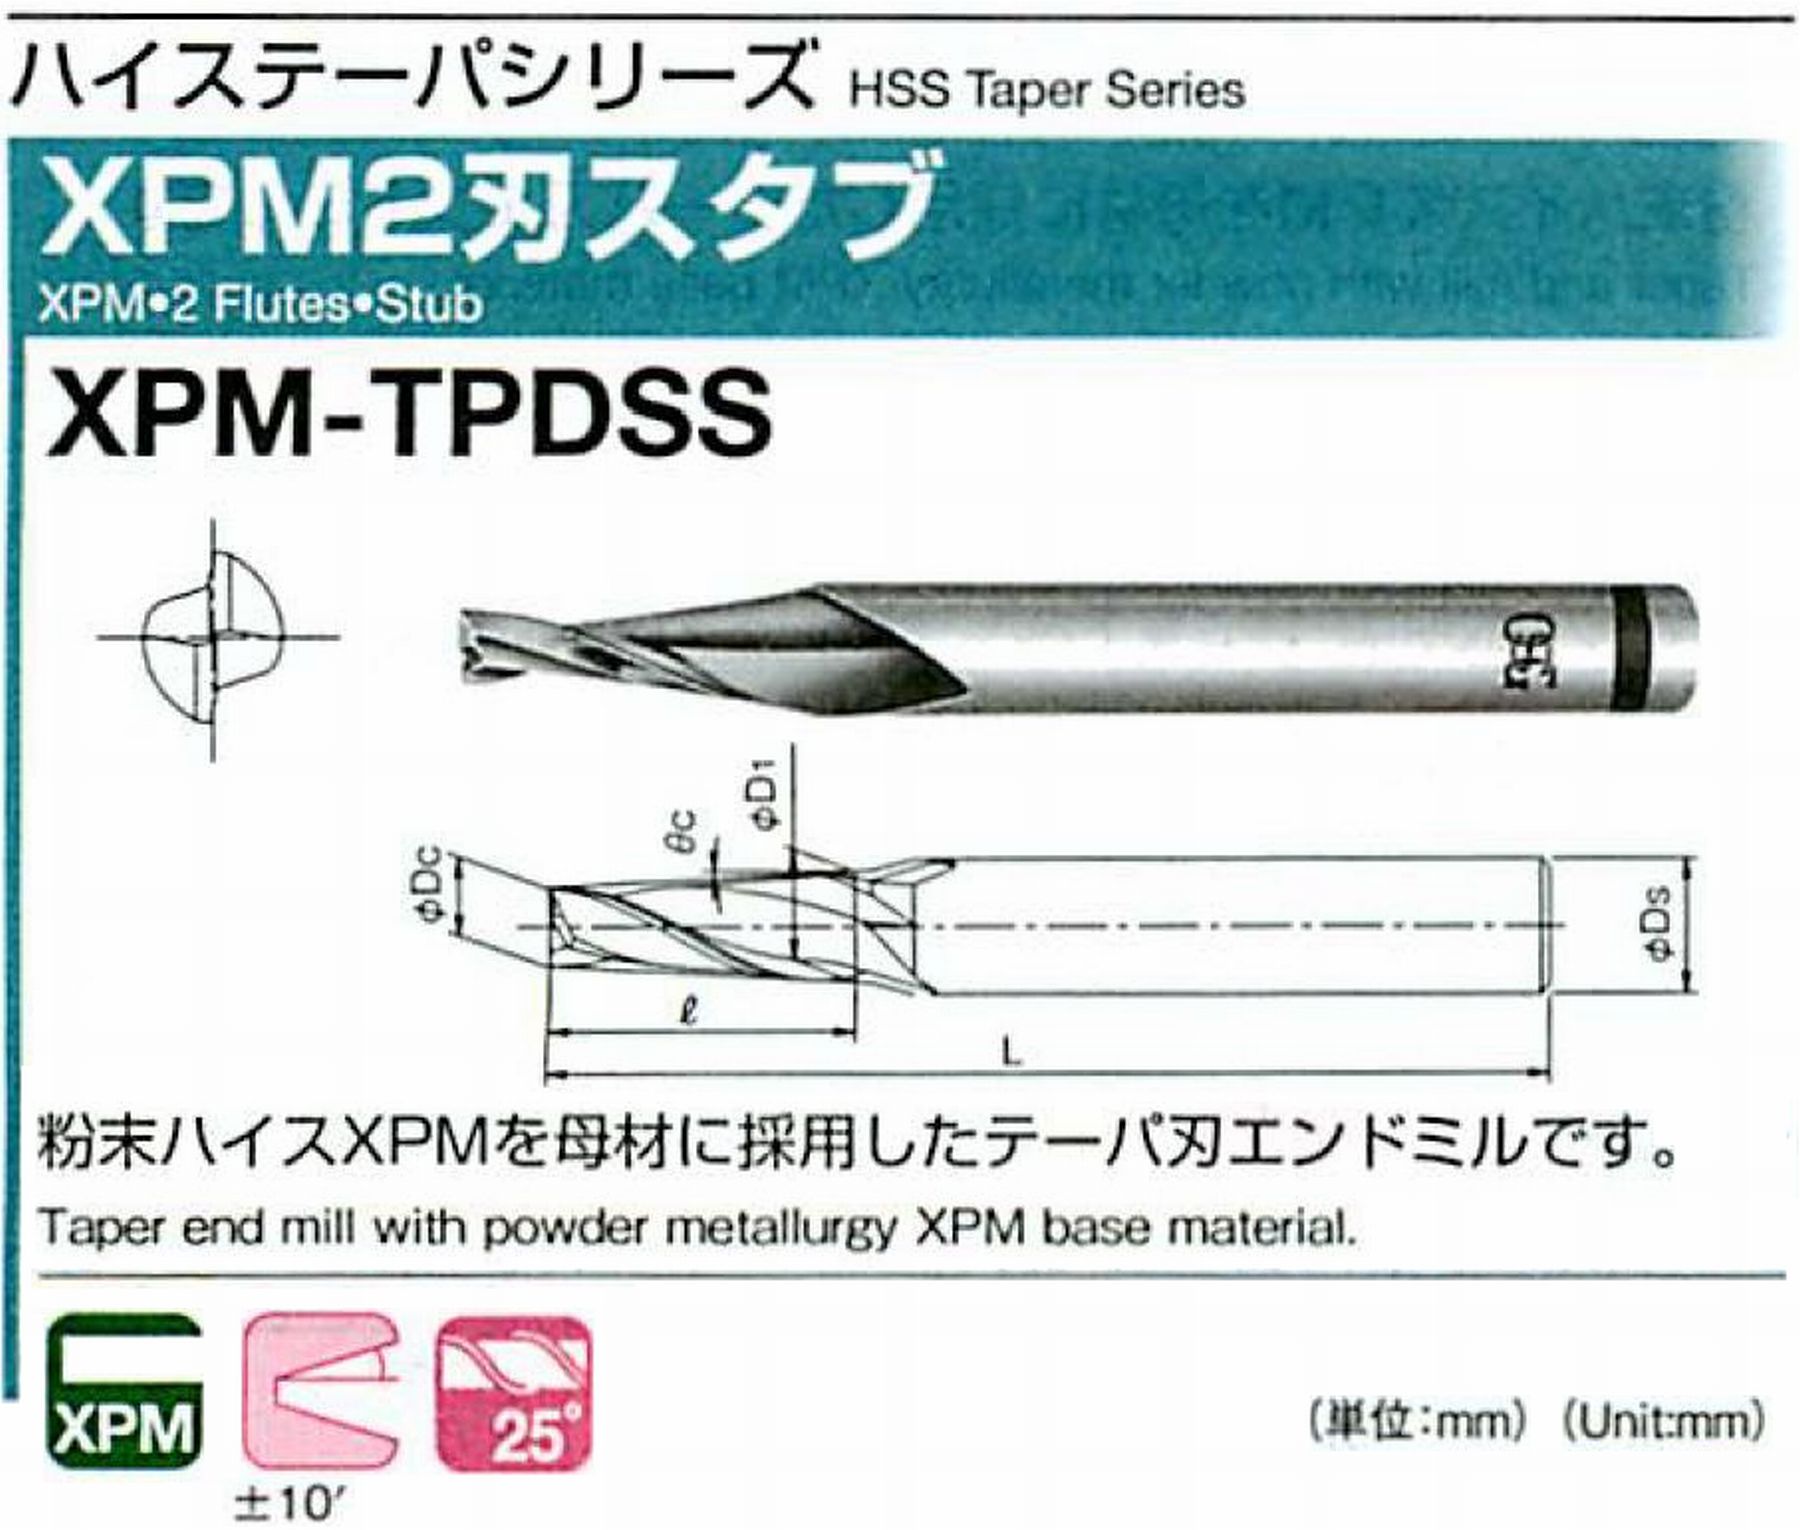 オーエスジー/OSG XPM2刃スタブ XPM-TPDSS 外径×刃部テーパ半角3×3° 全長55 刃長11 シャンク径6mm 大端径4.15